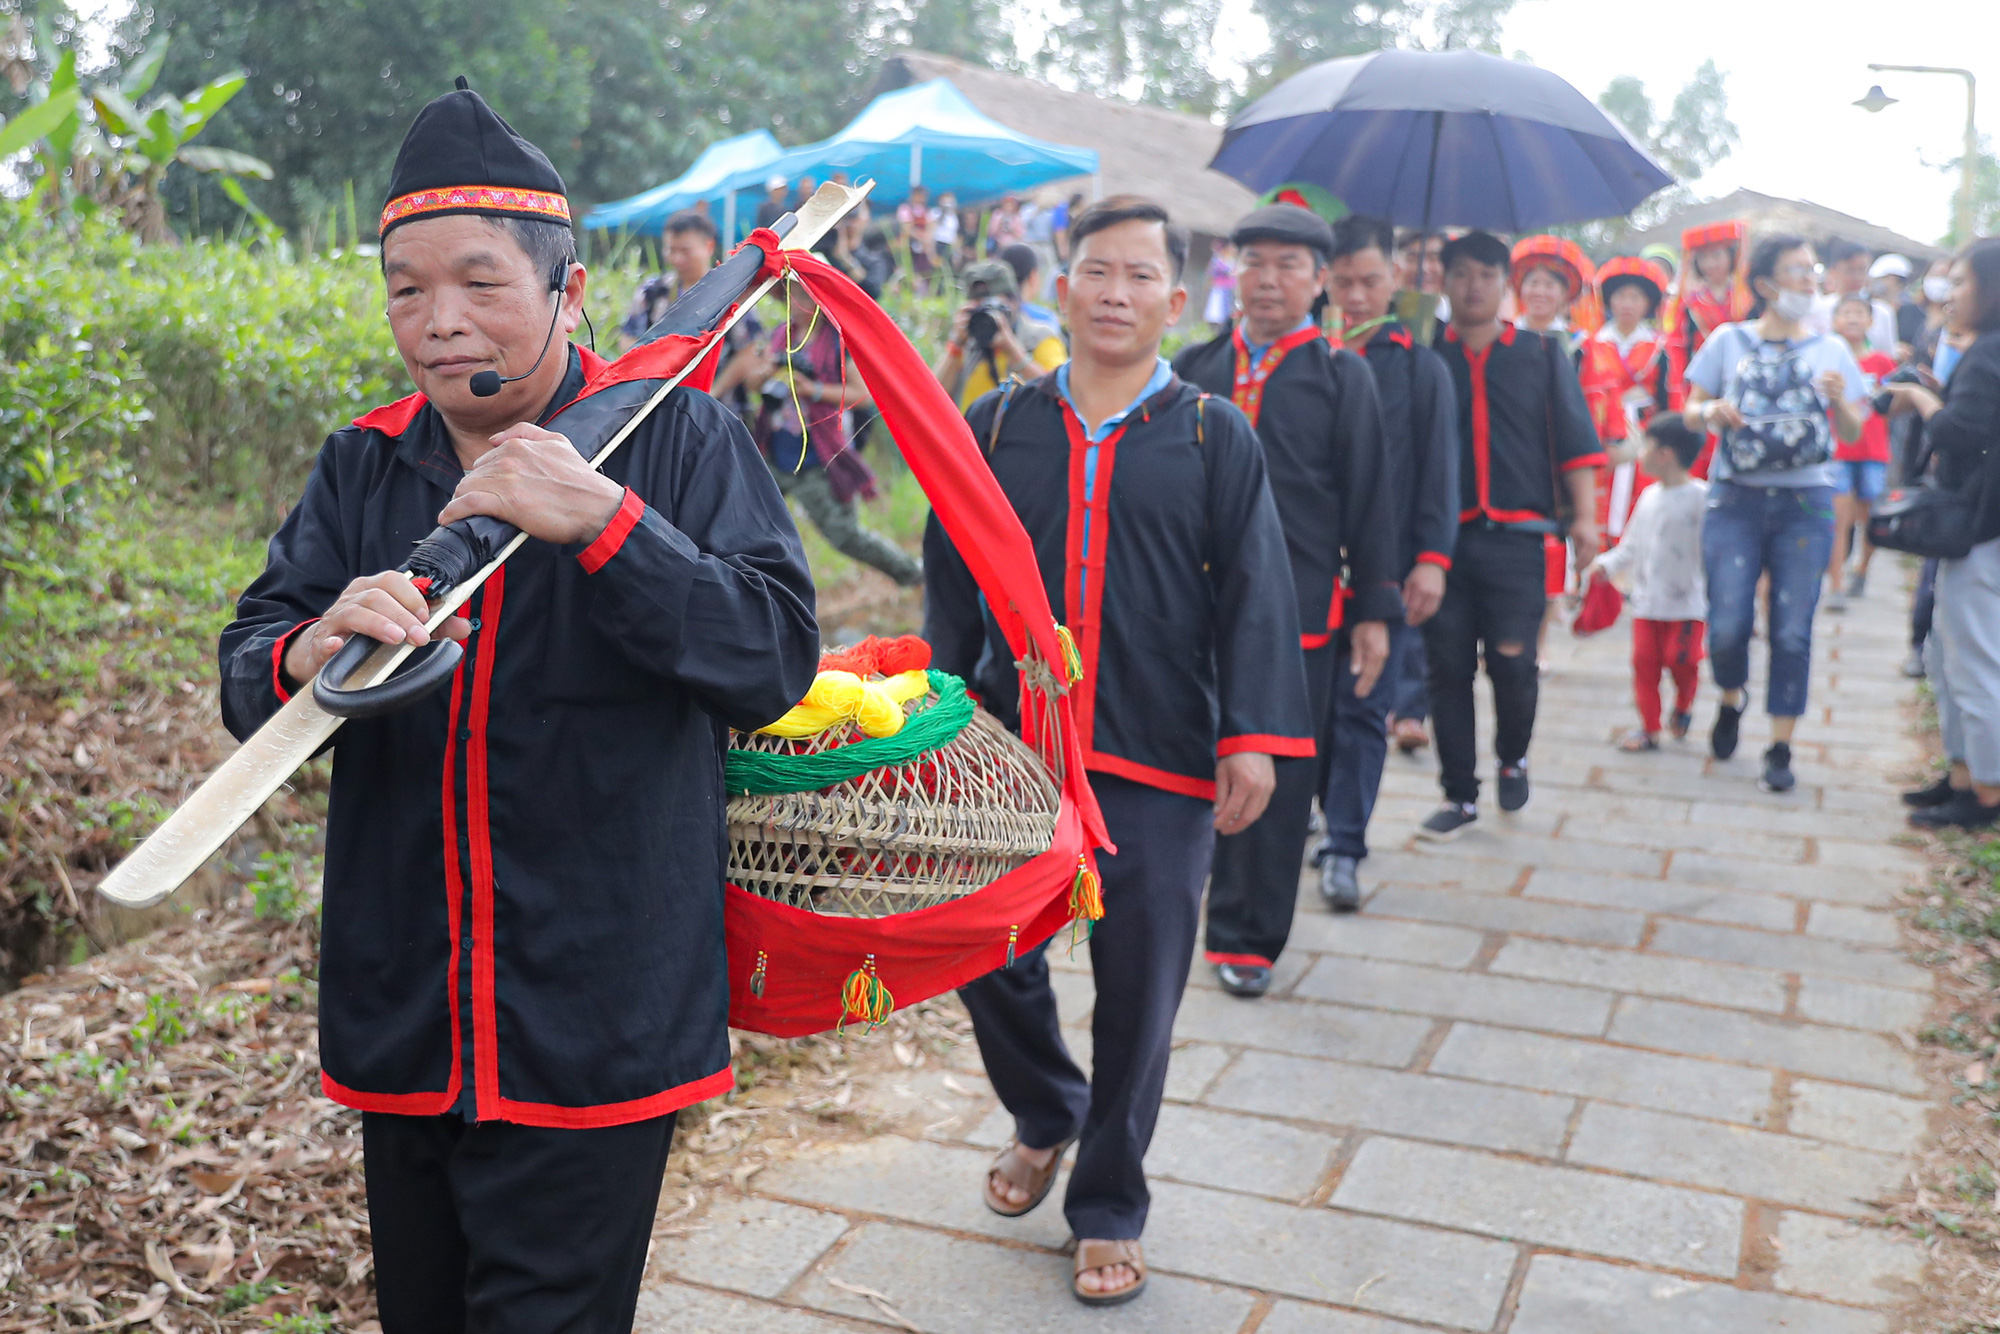 Tái hiện lễ cưới của Dân tộc Pà Thẻn (Hà Giang) và nghi lễ Mừng lúa mới của dân tộc Bahnar (Gia Lai)  tại Hà Nội - Ảnh 1.